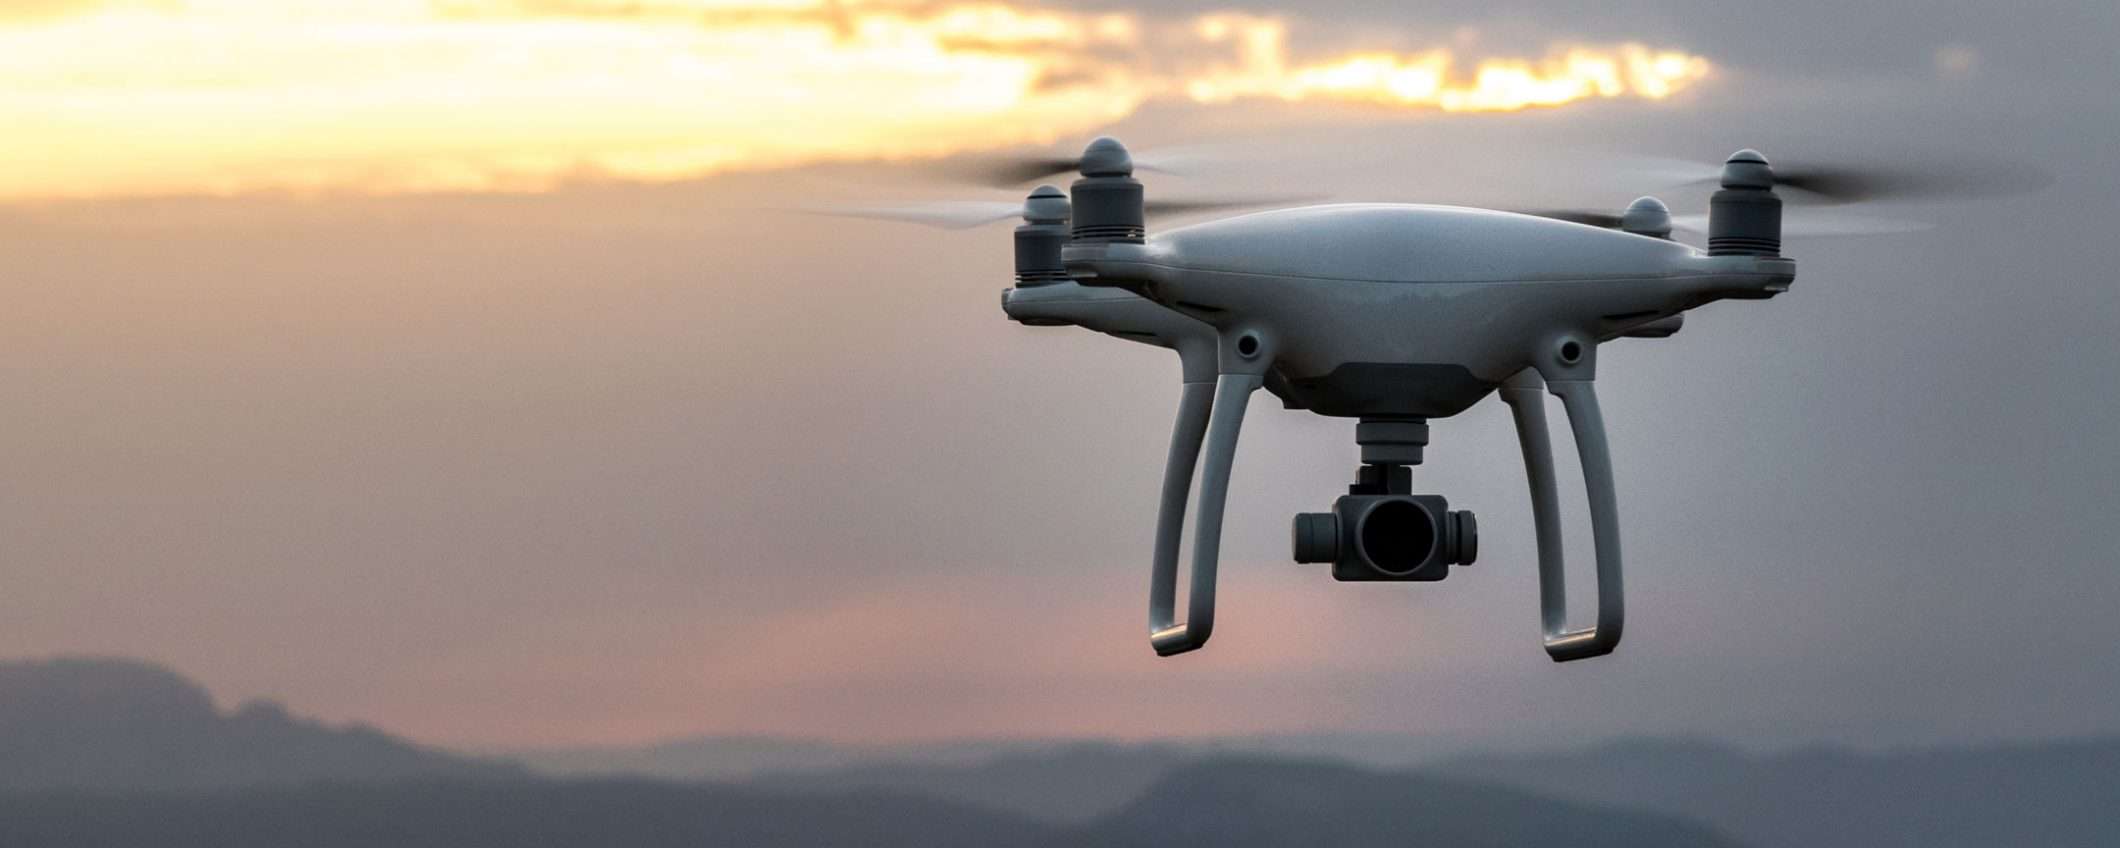 Stati Uniti: i droni siano identificabili